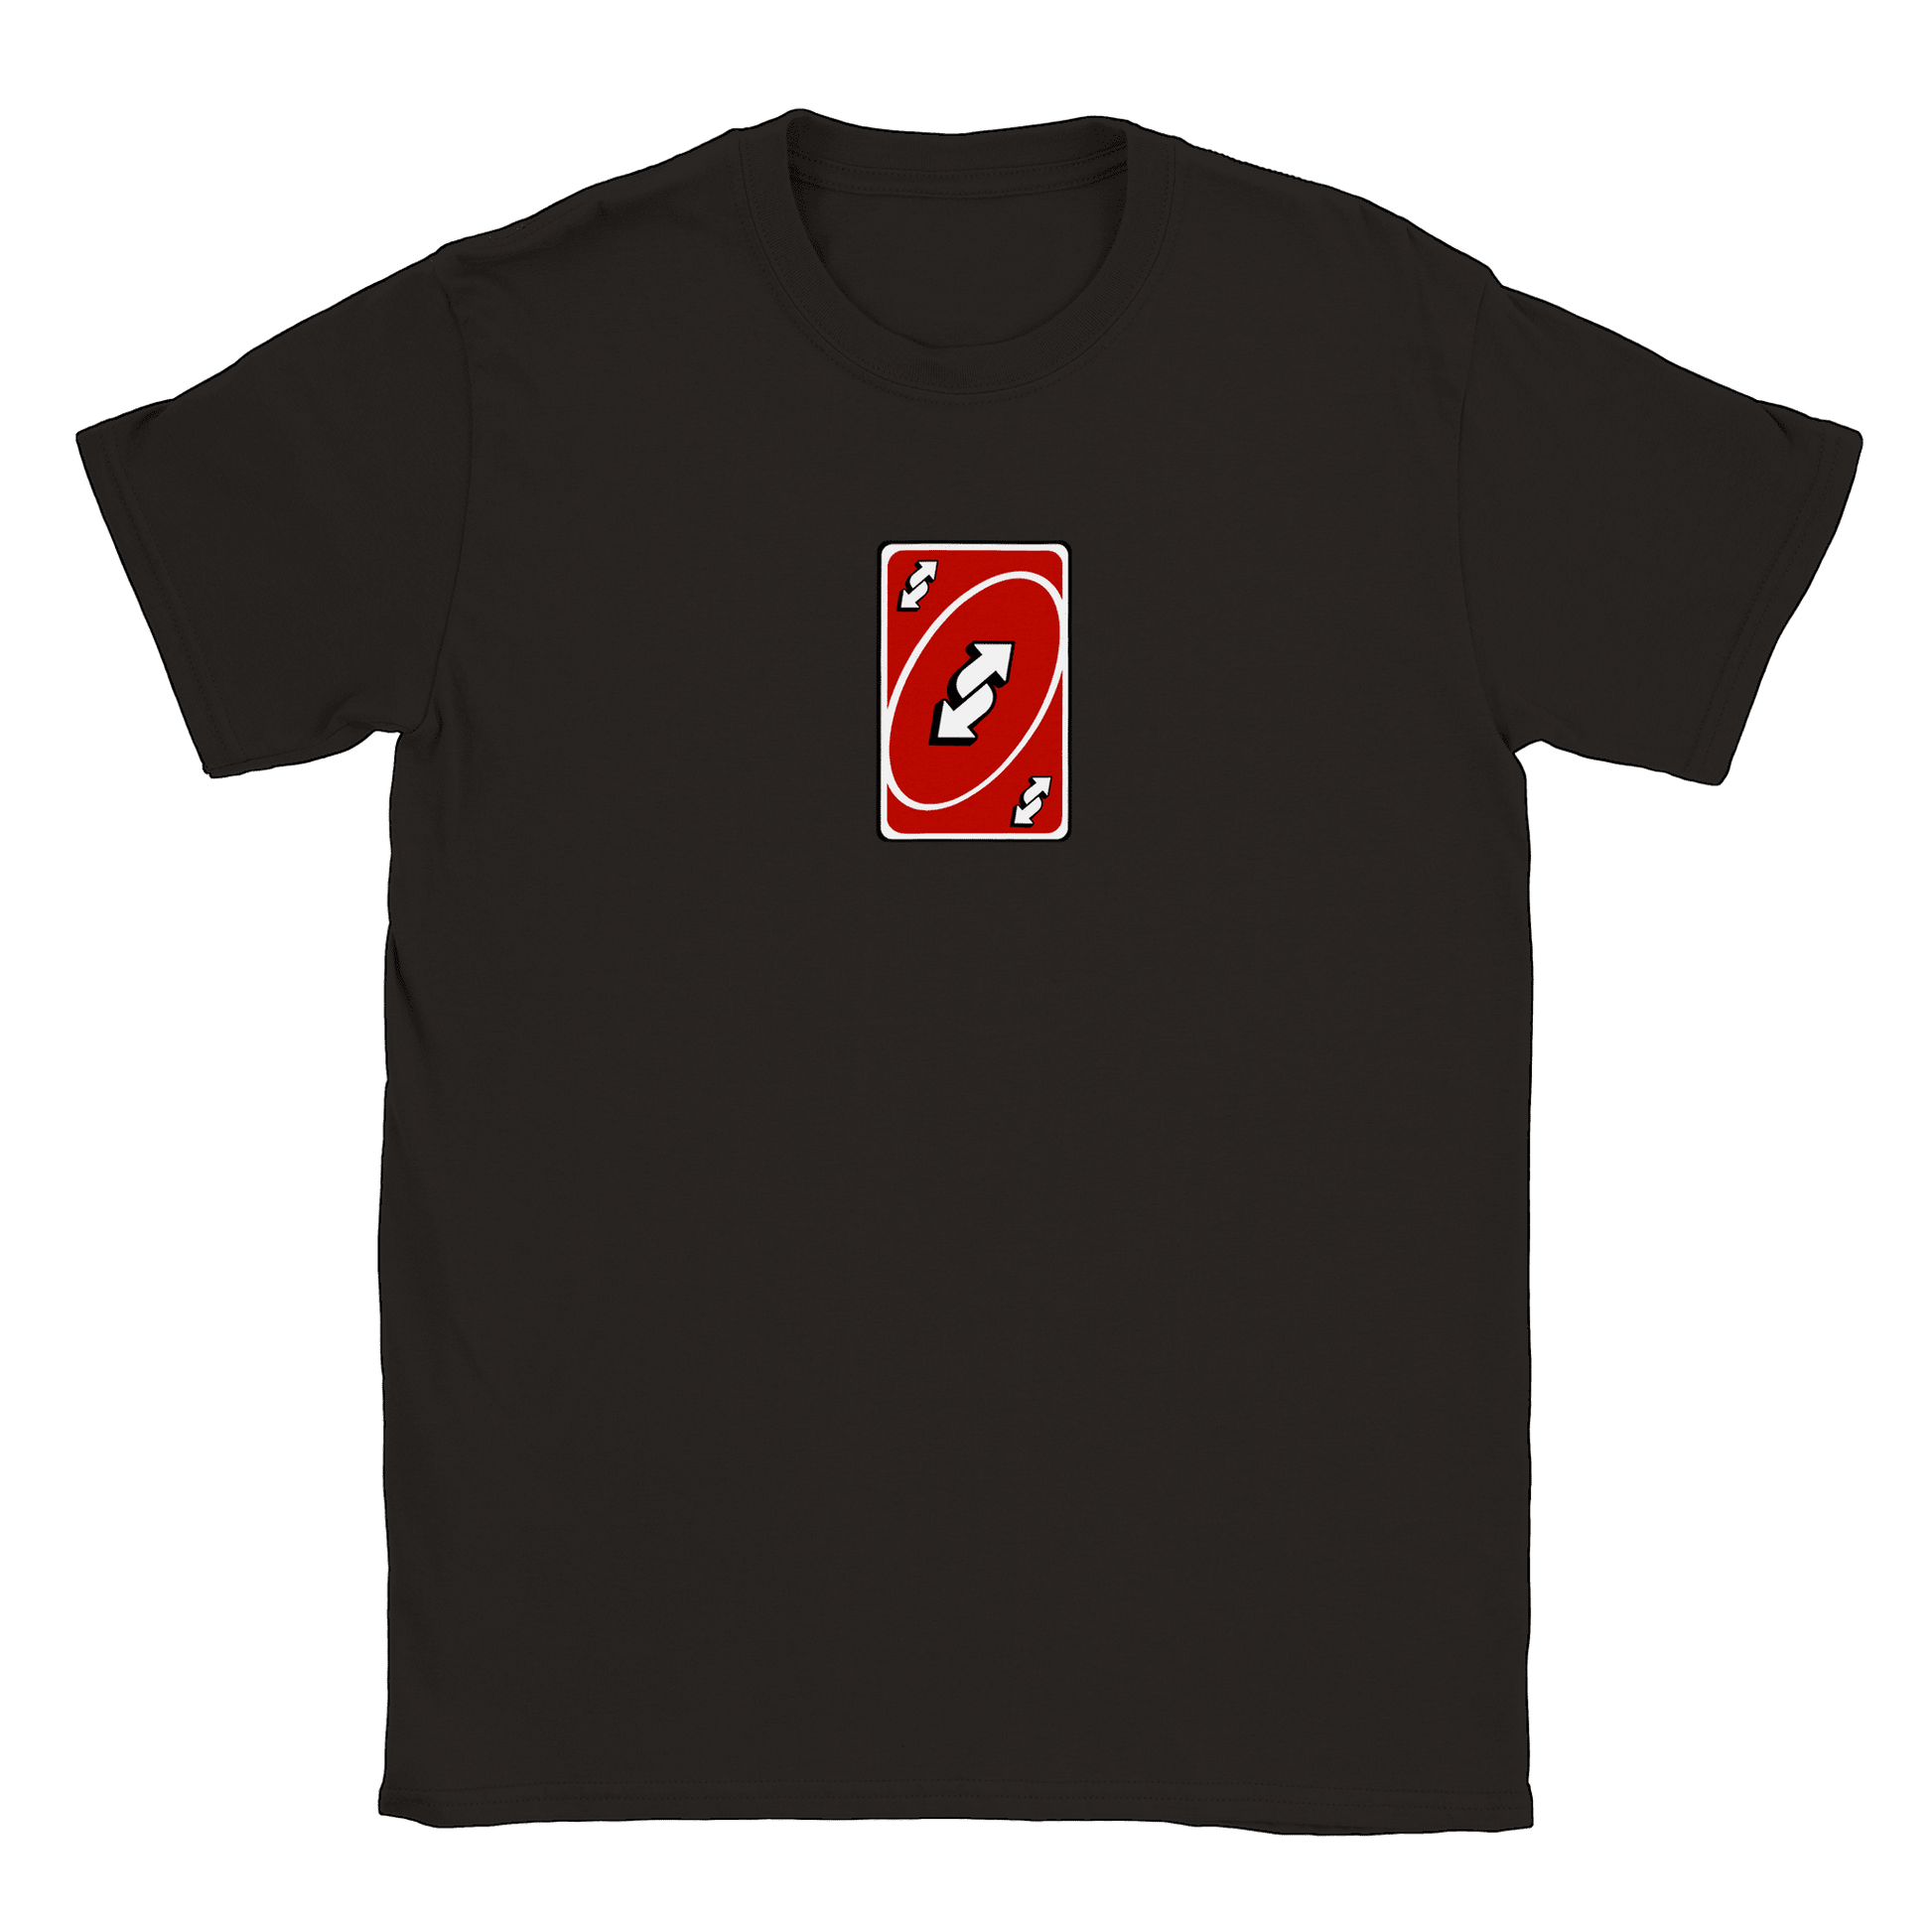 Vändkort - T-shirt Svart